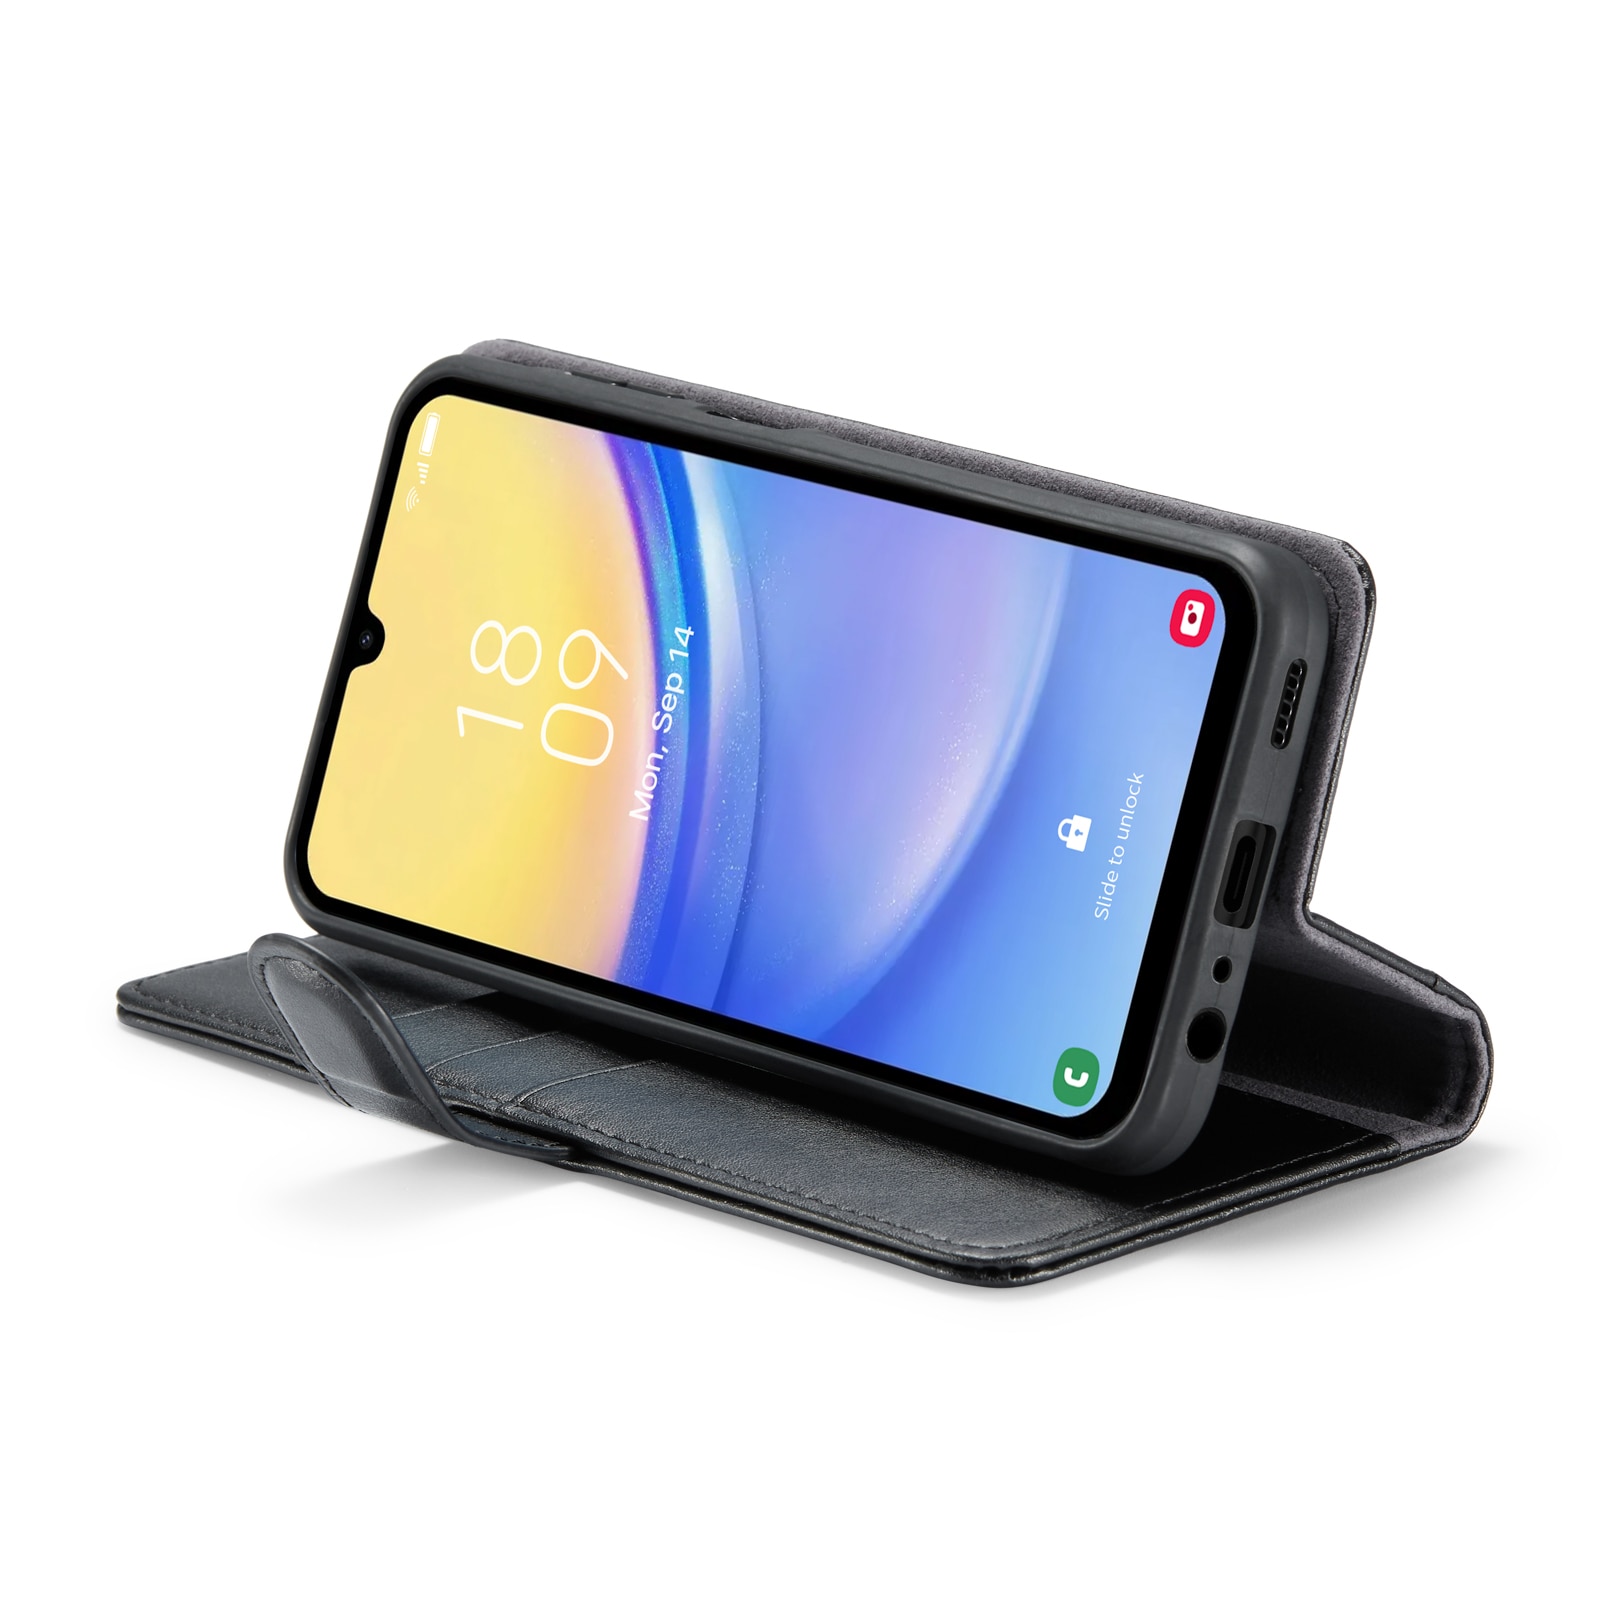 Samsung Galaxy A15 Plånboksfodral i Äkta Läder, svart